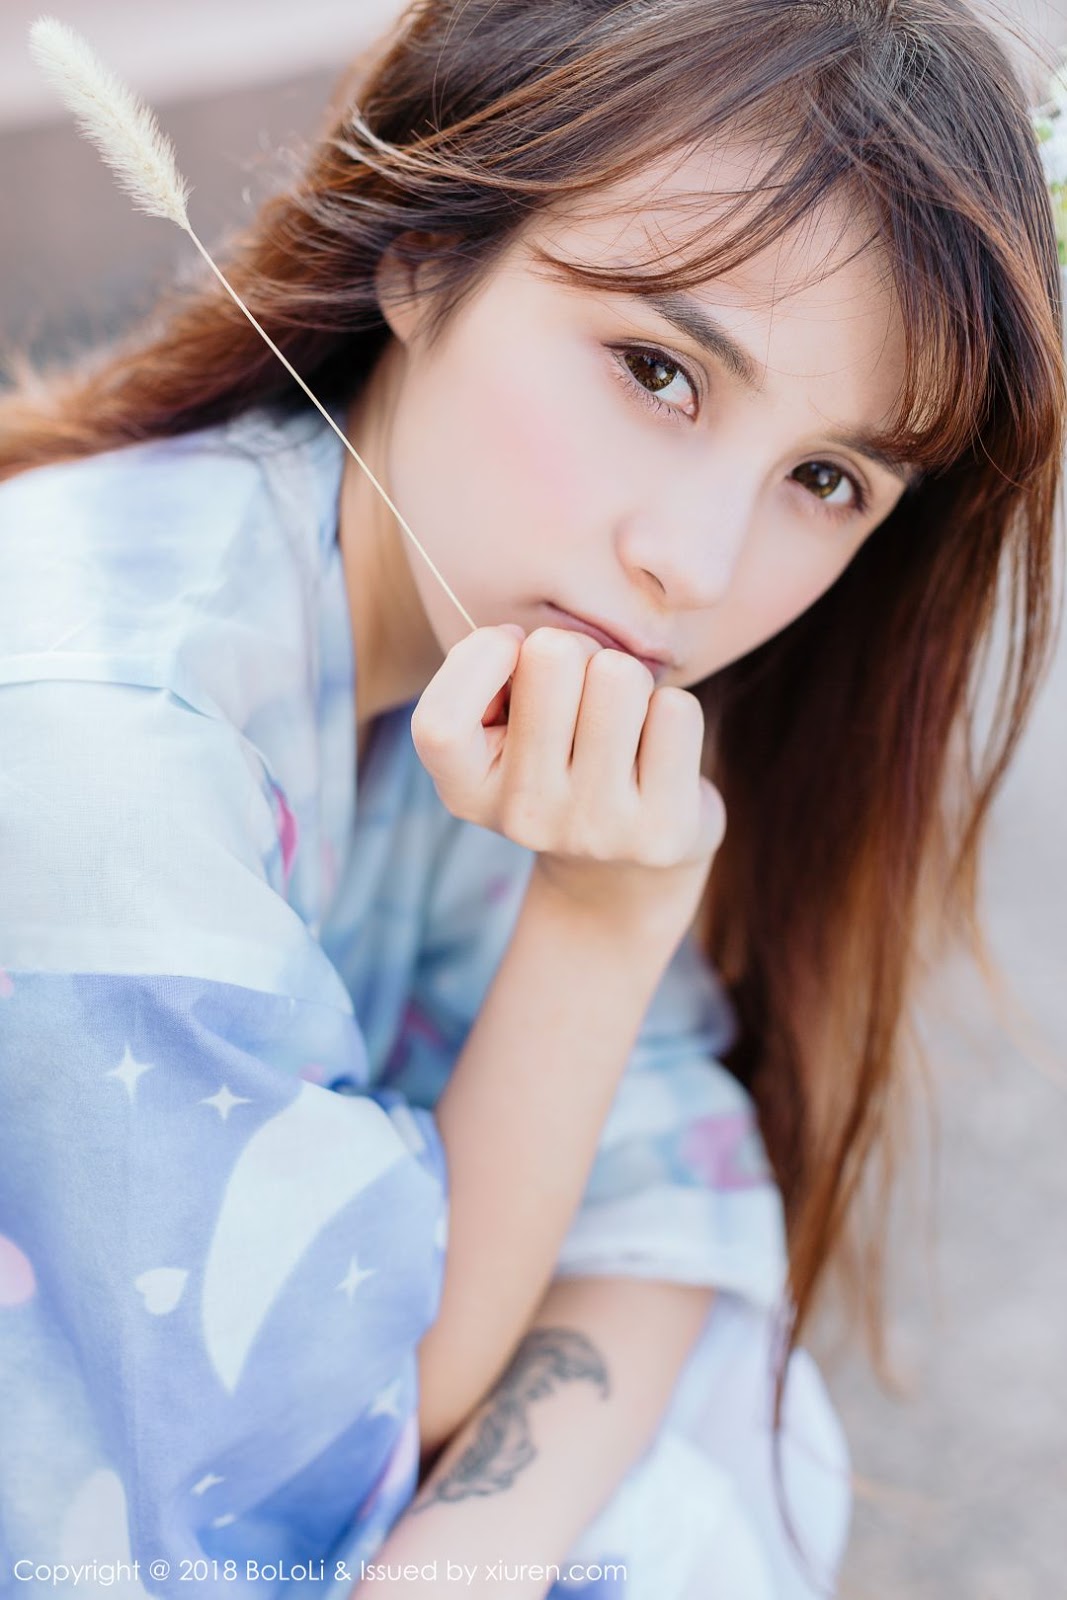 Tukmo Vol.118: Chinese model Xia Mei Jiang (夏美酱) - TruePic.net